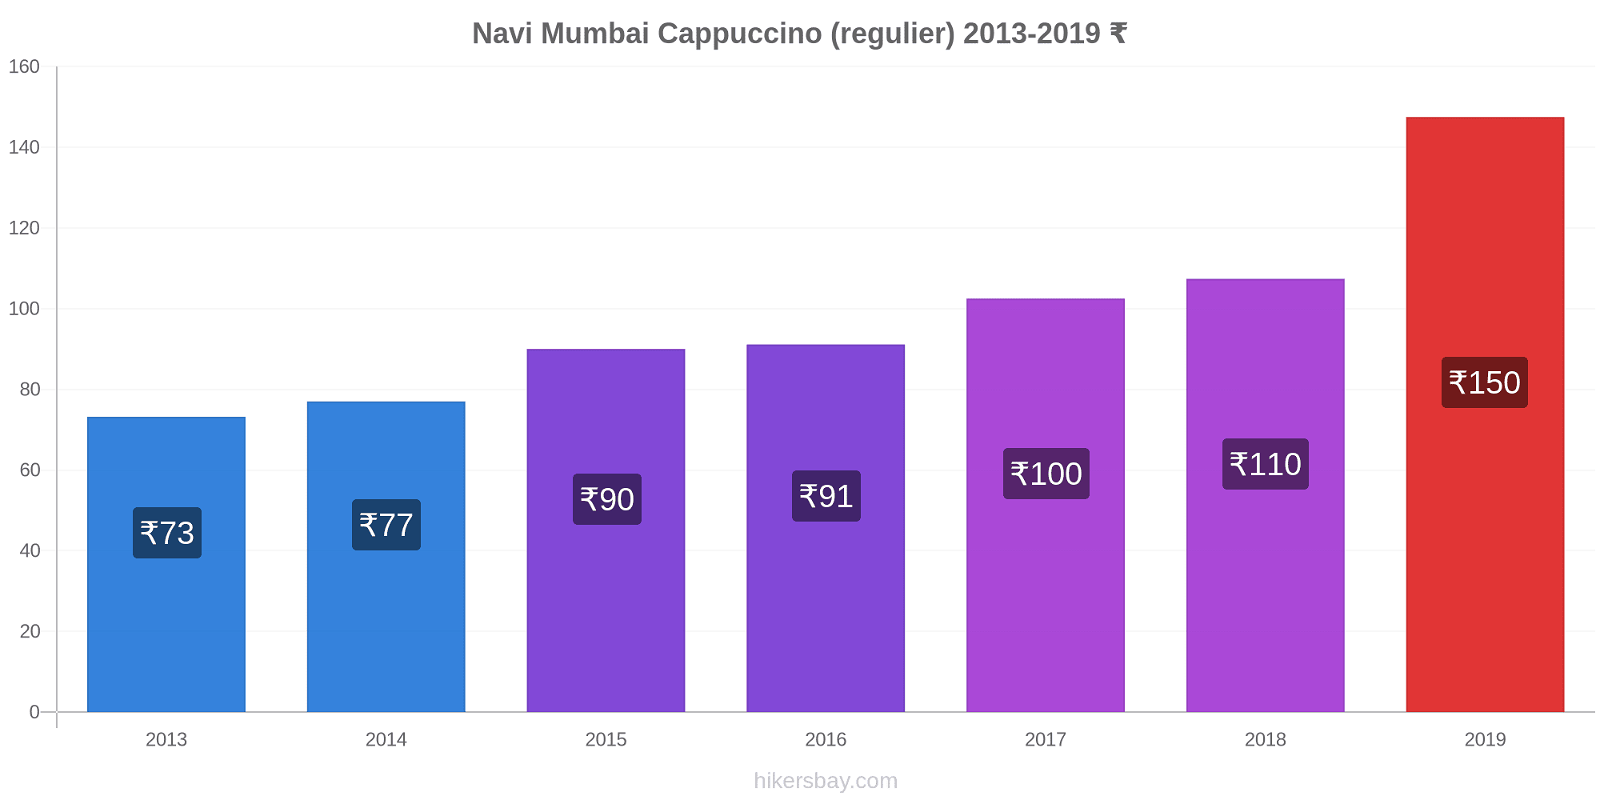 Navi Mumbai prijswijzigingen Cappuccino (regelmatige) hikersbay.com